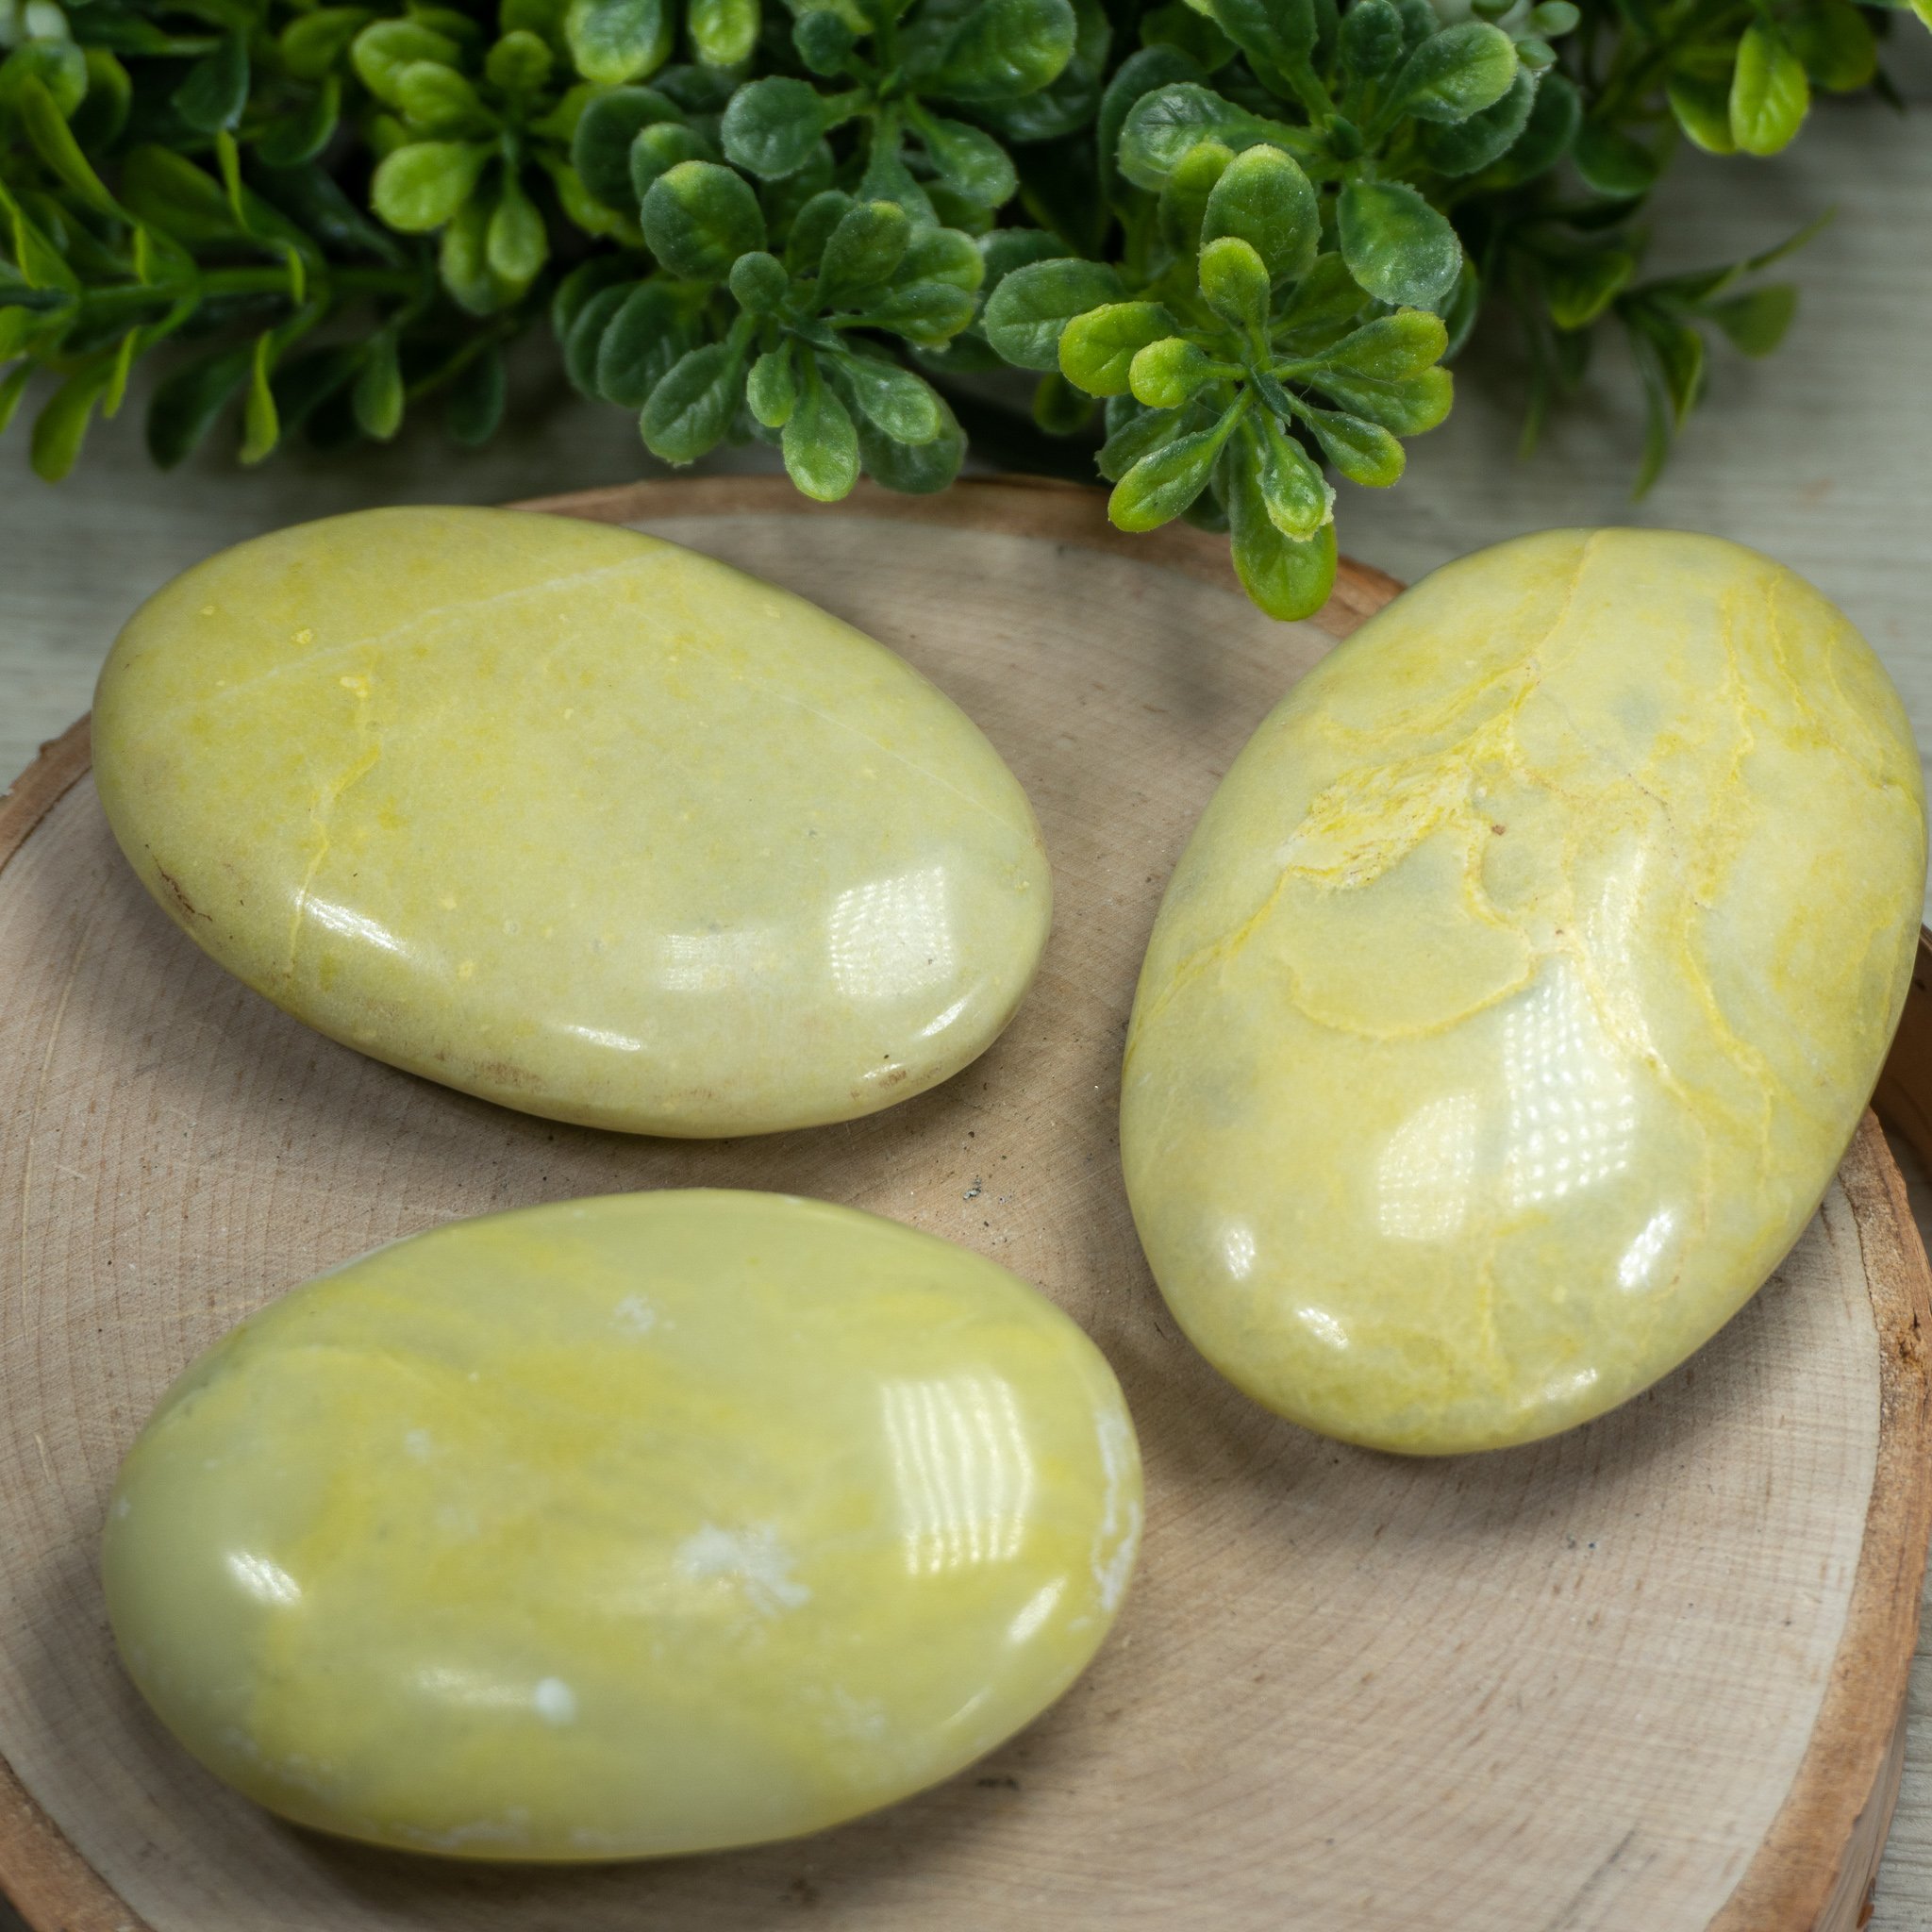 Yellow Jade Palmstone